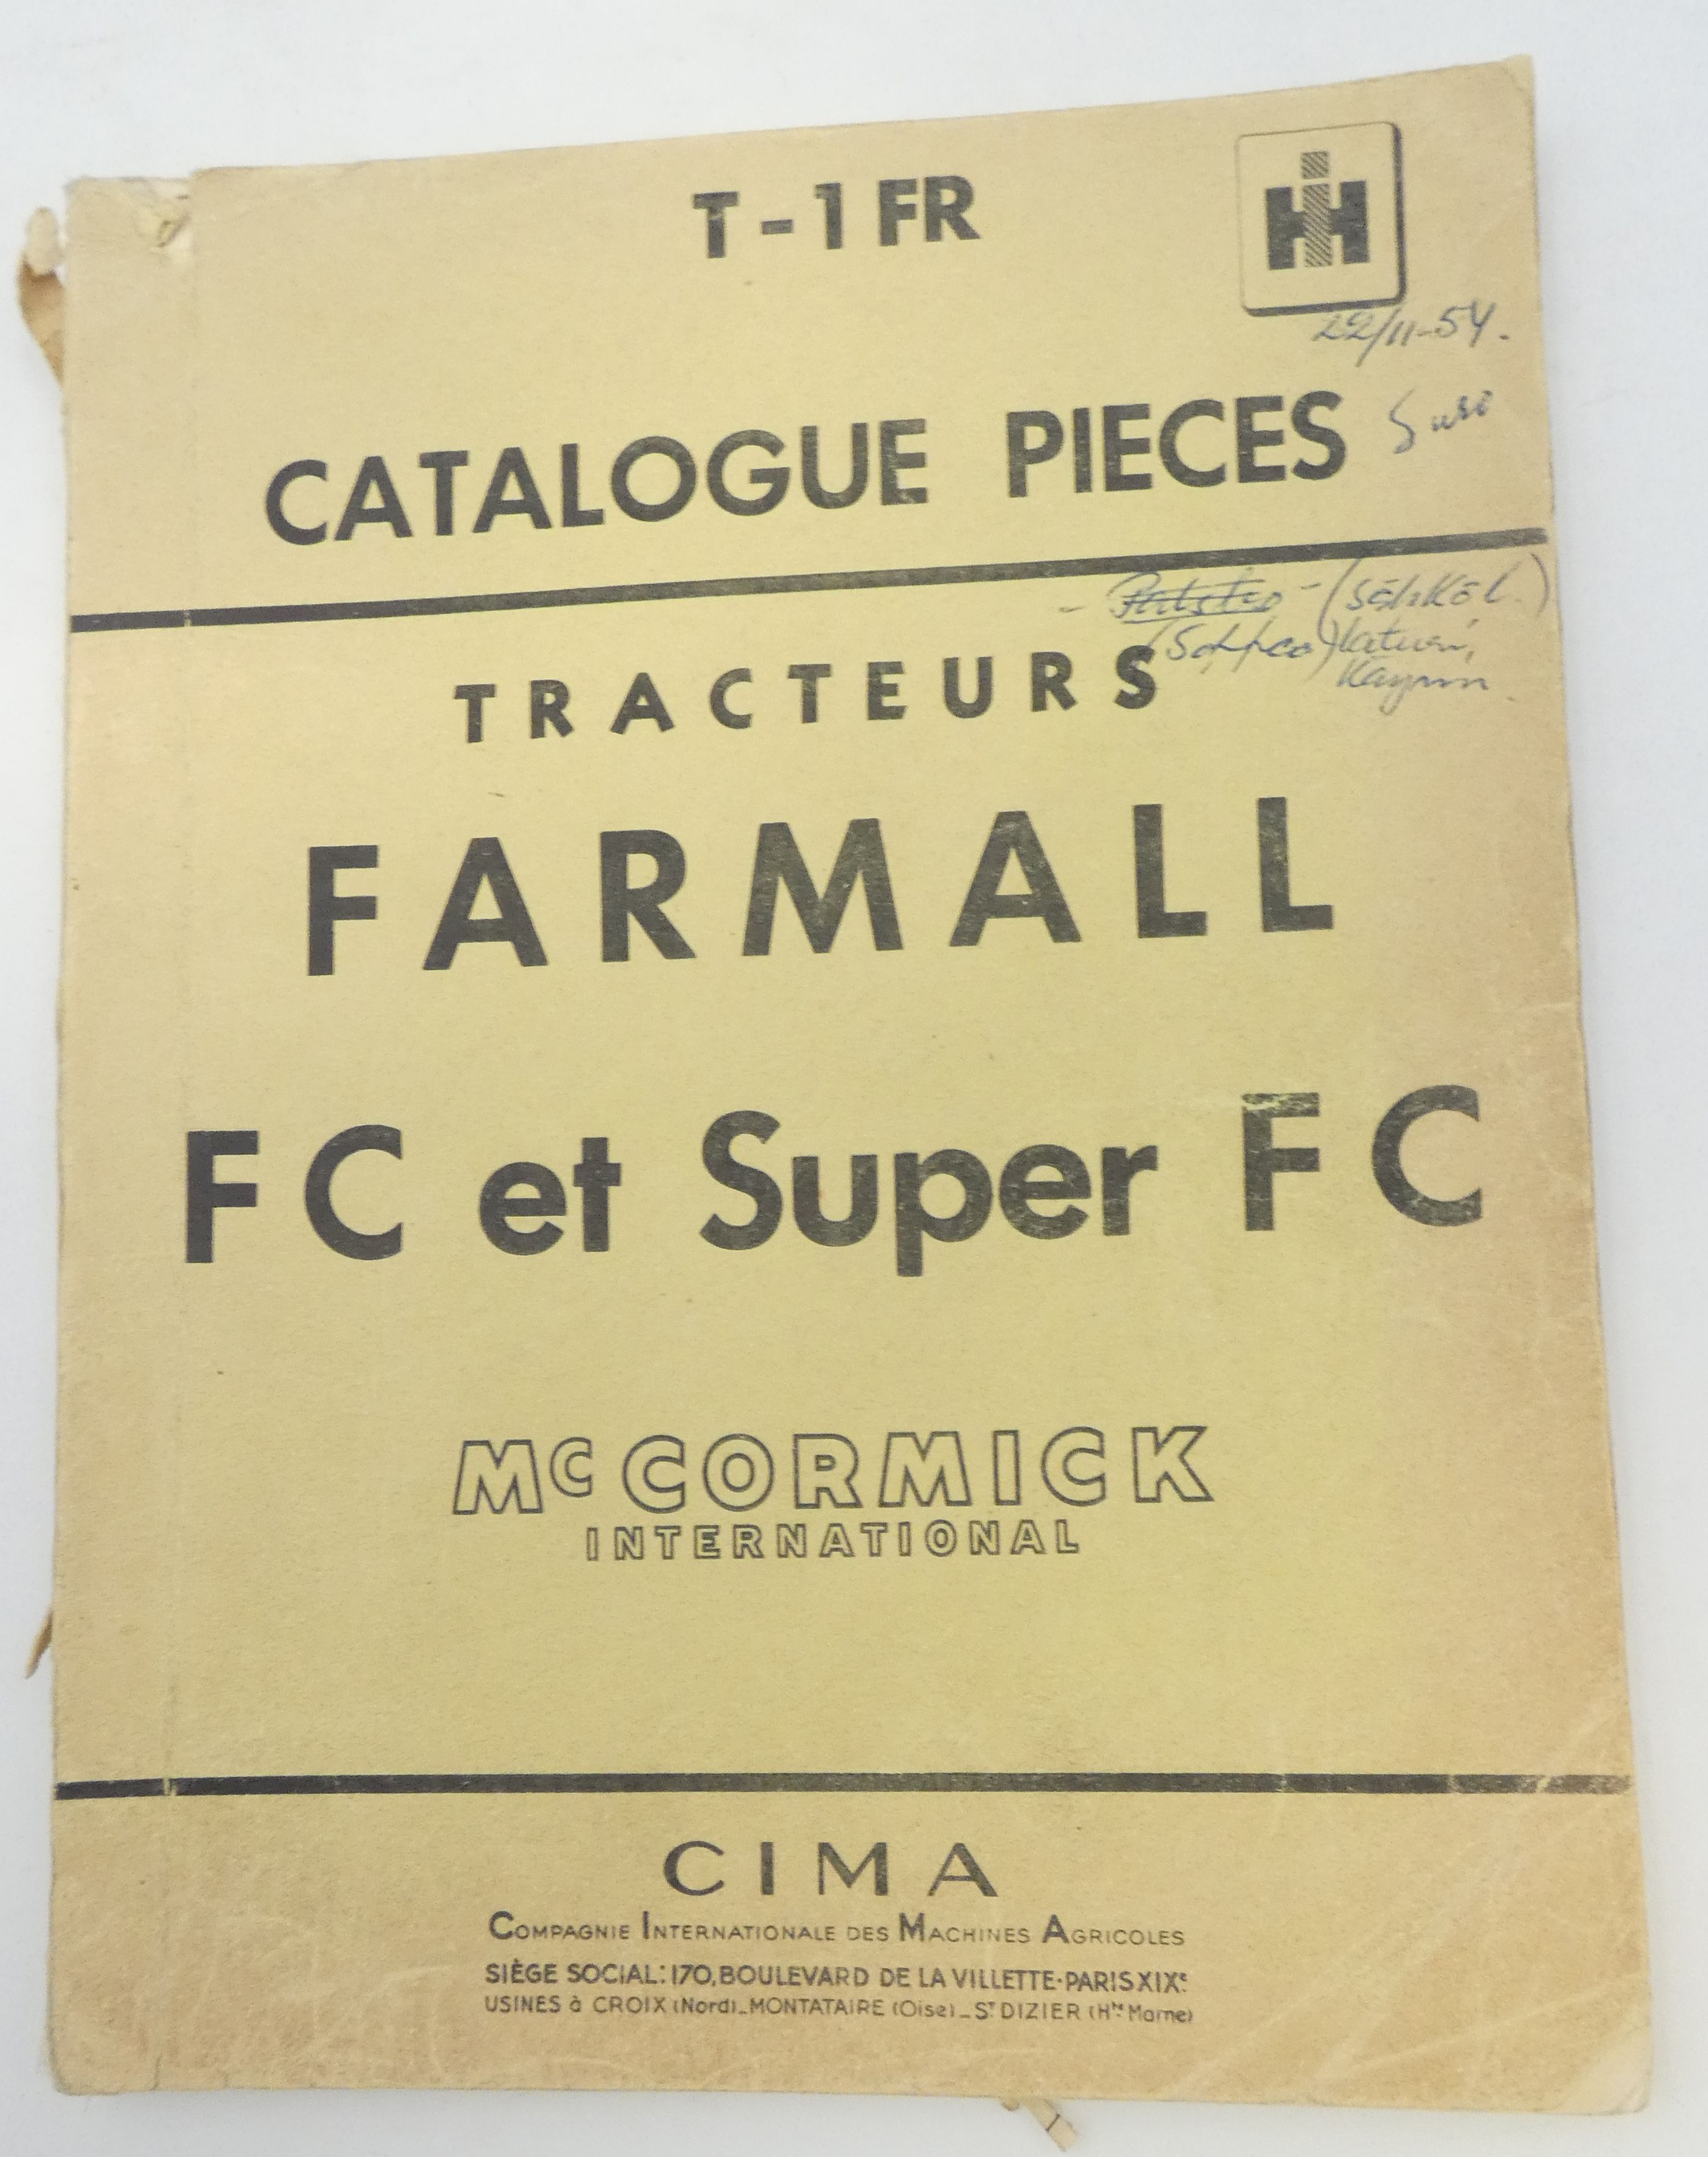 McCormick Fc et super Fc farmall tracteurs catalogue pieces